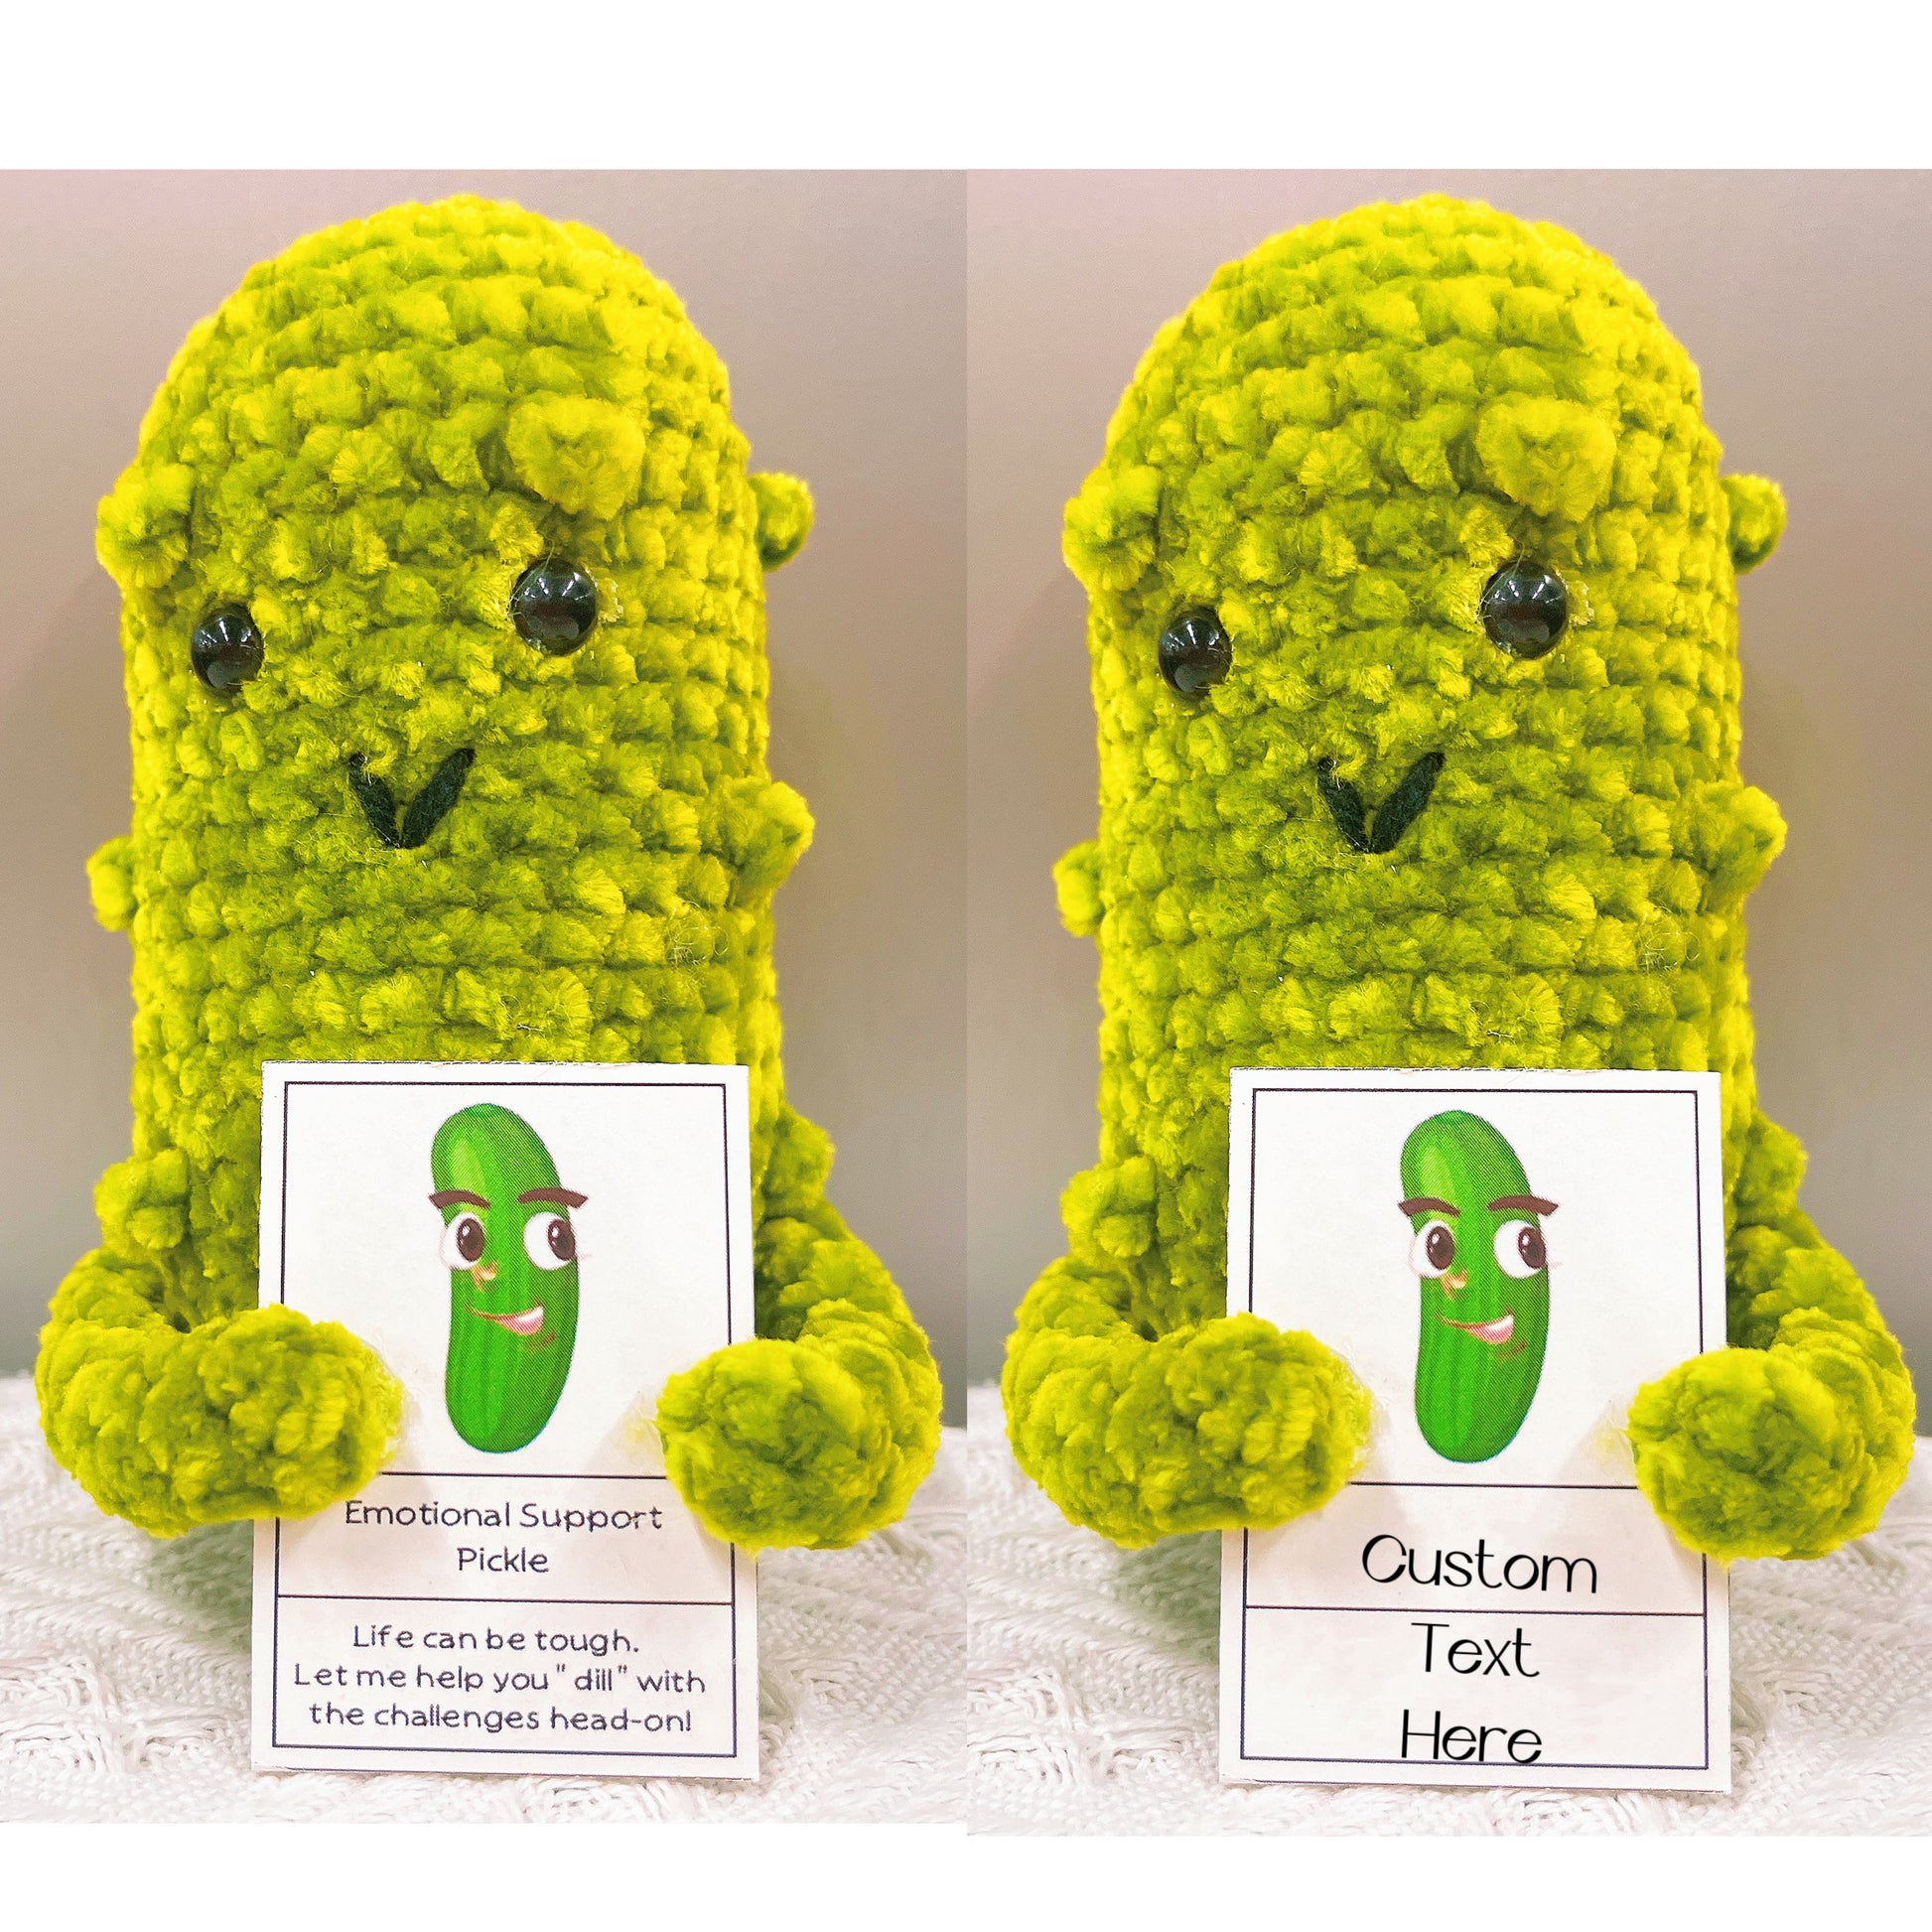 Emotional Support Pickle, Mini PoupéE de Cornichon TricotéE avec Ca